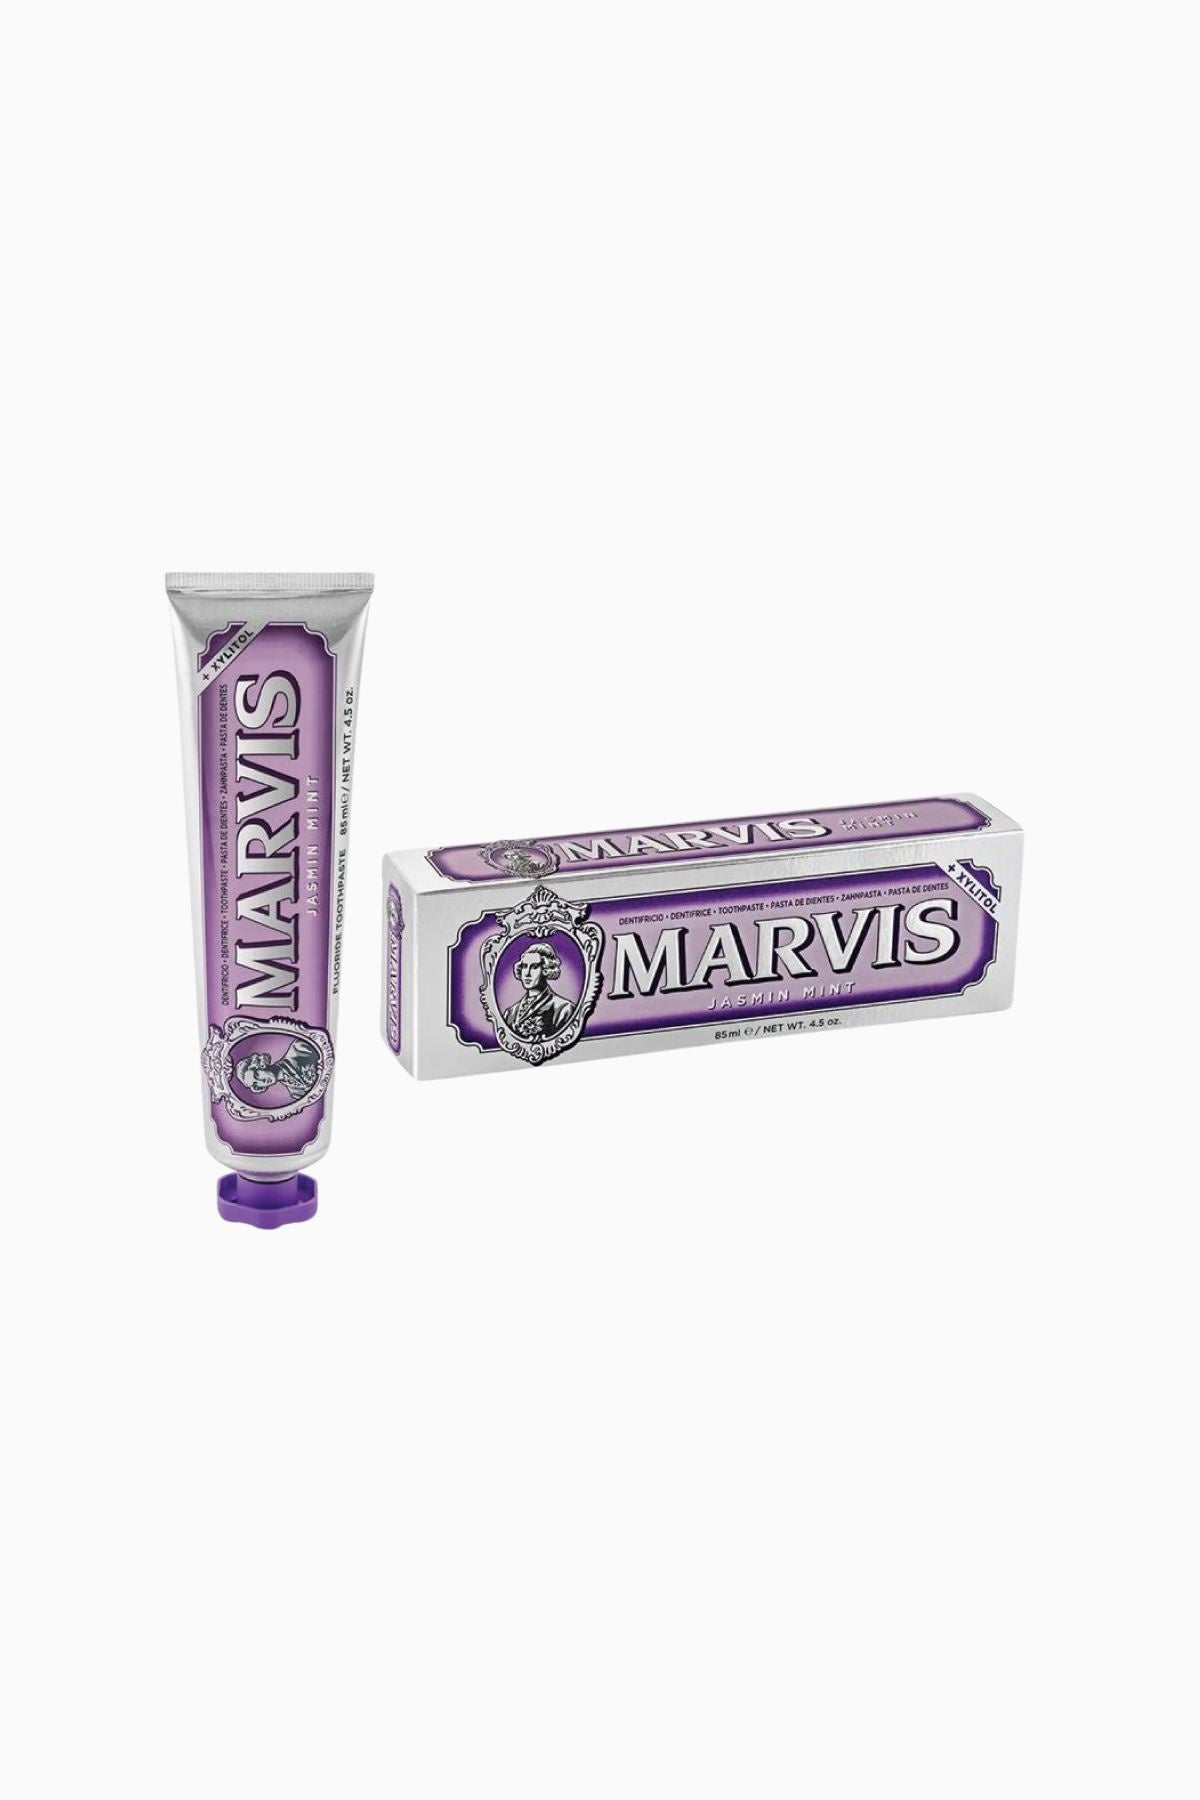 Marvis Toothpaste - Jasmin Mint